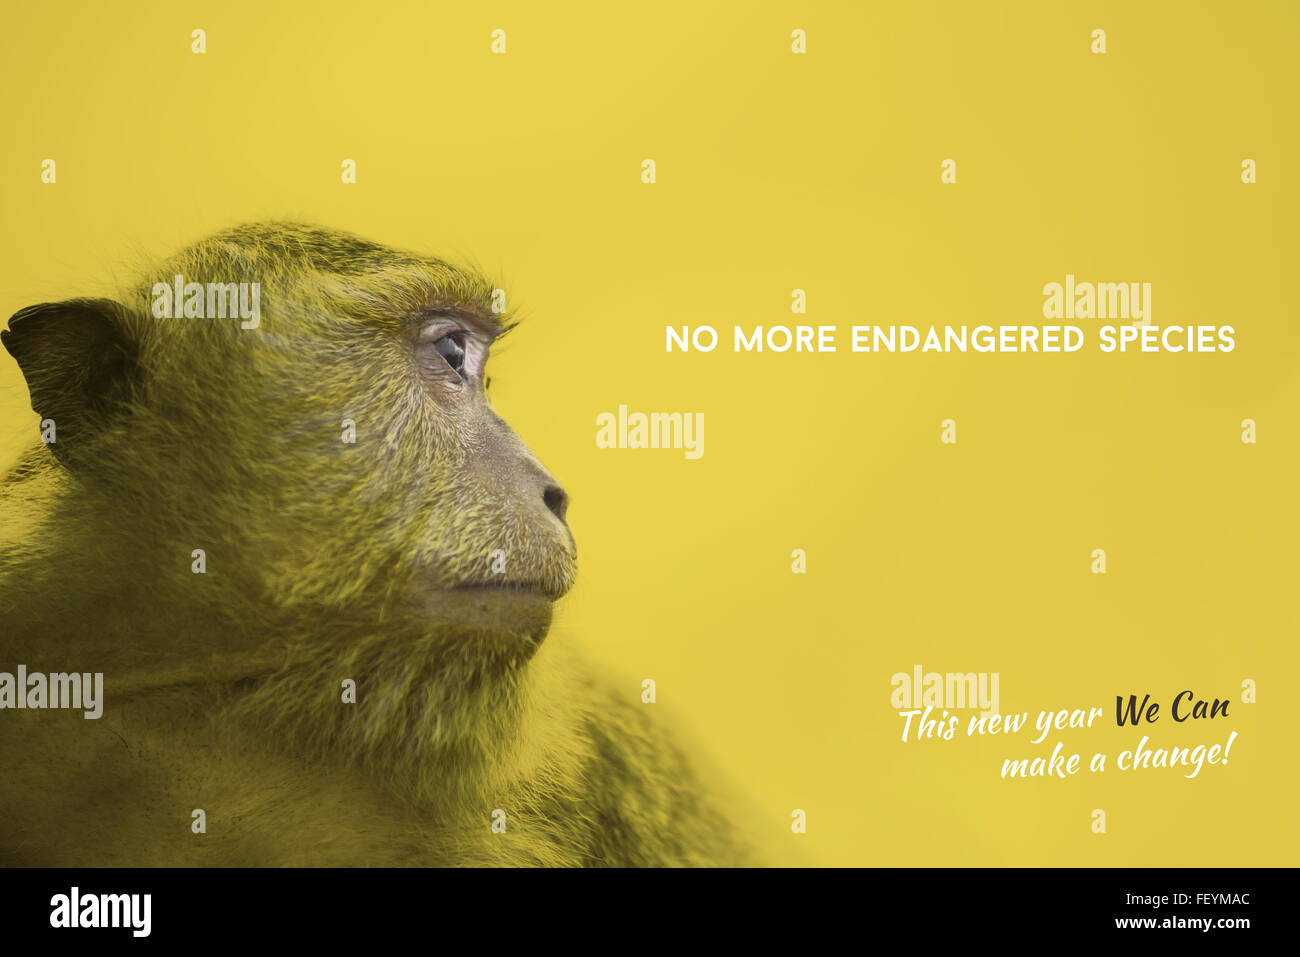 La conservation de la faune sauvage jaune coloré avec design monkey face portrait photography et des espèces en texte de sensibilisation Banque D'Images